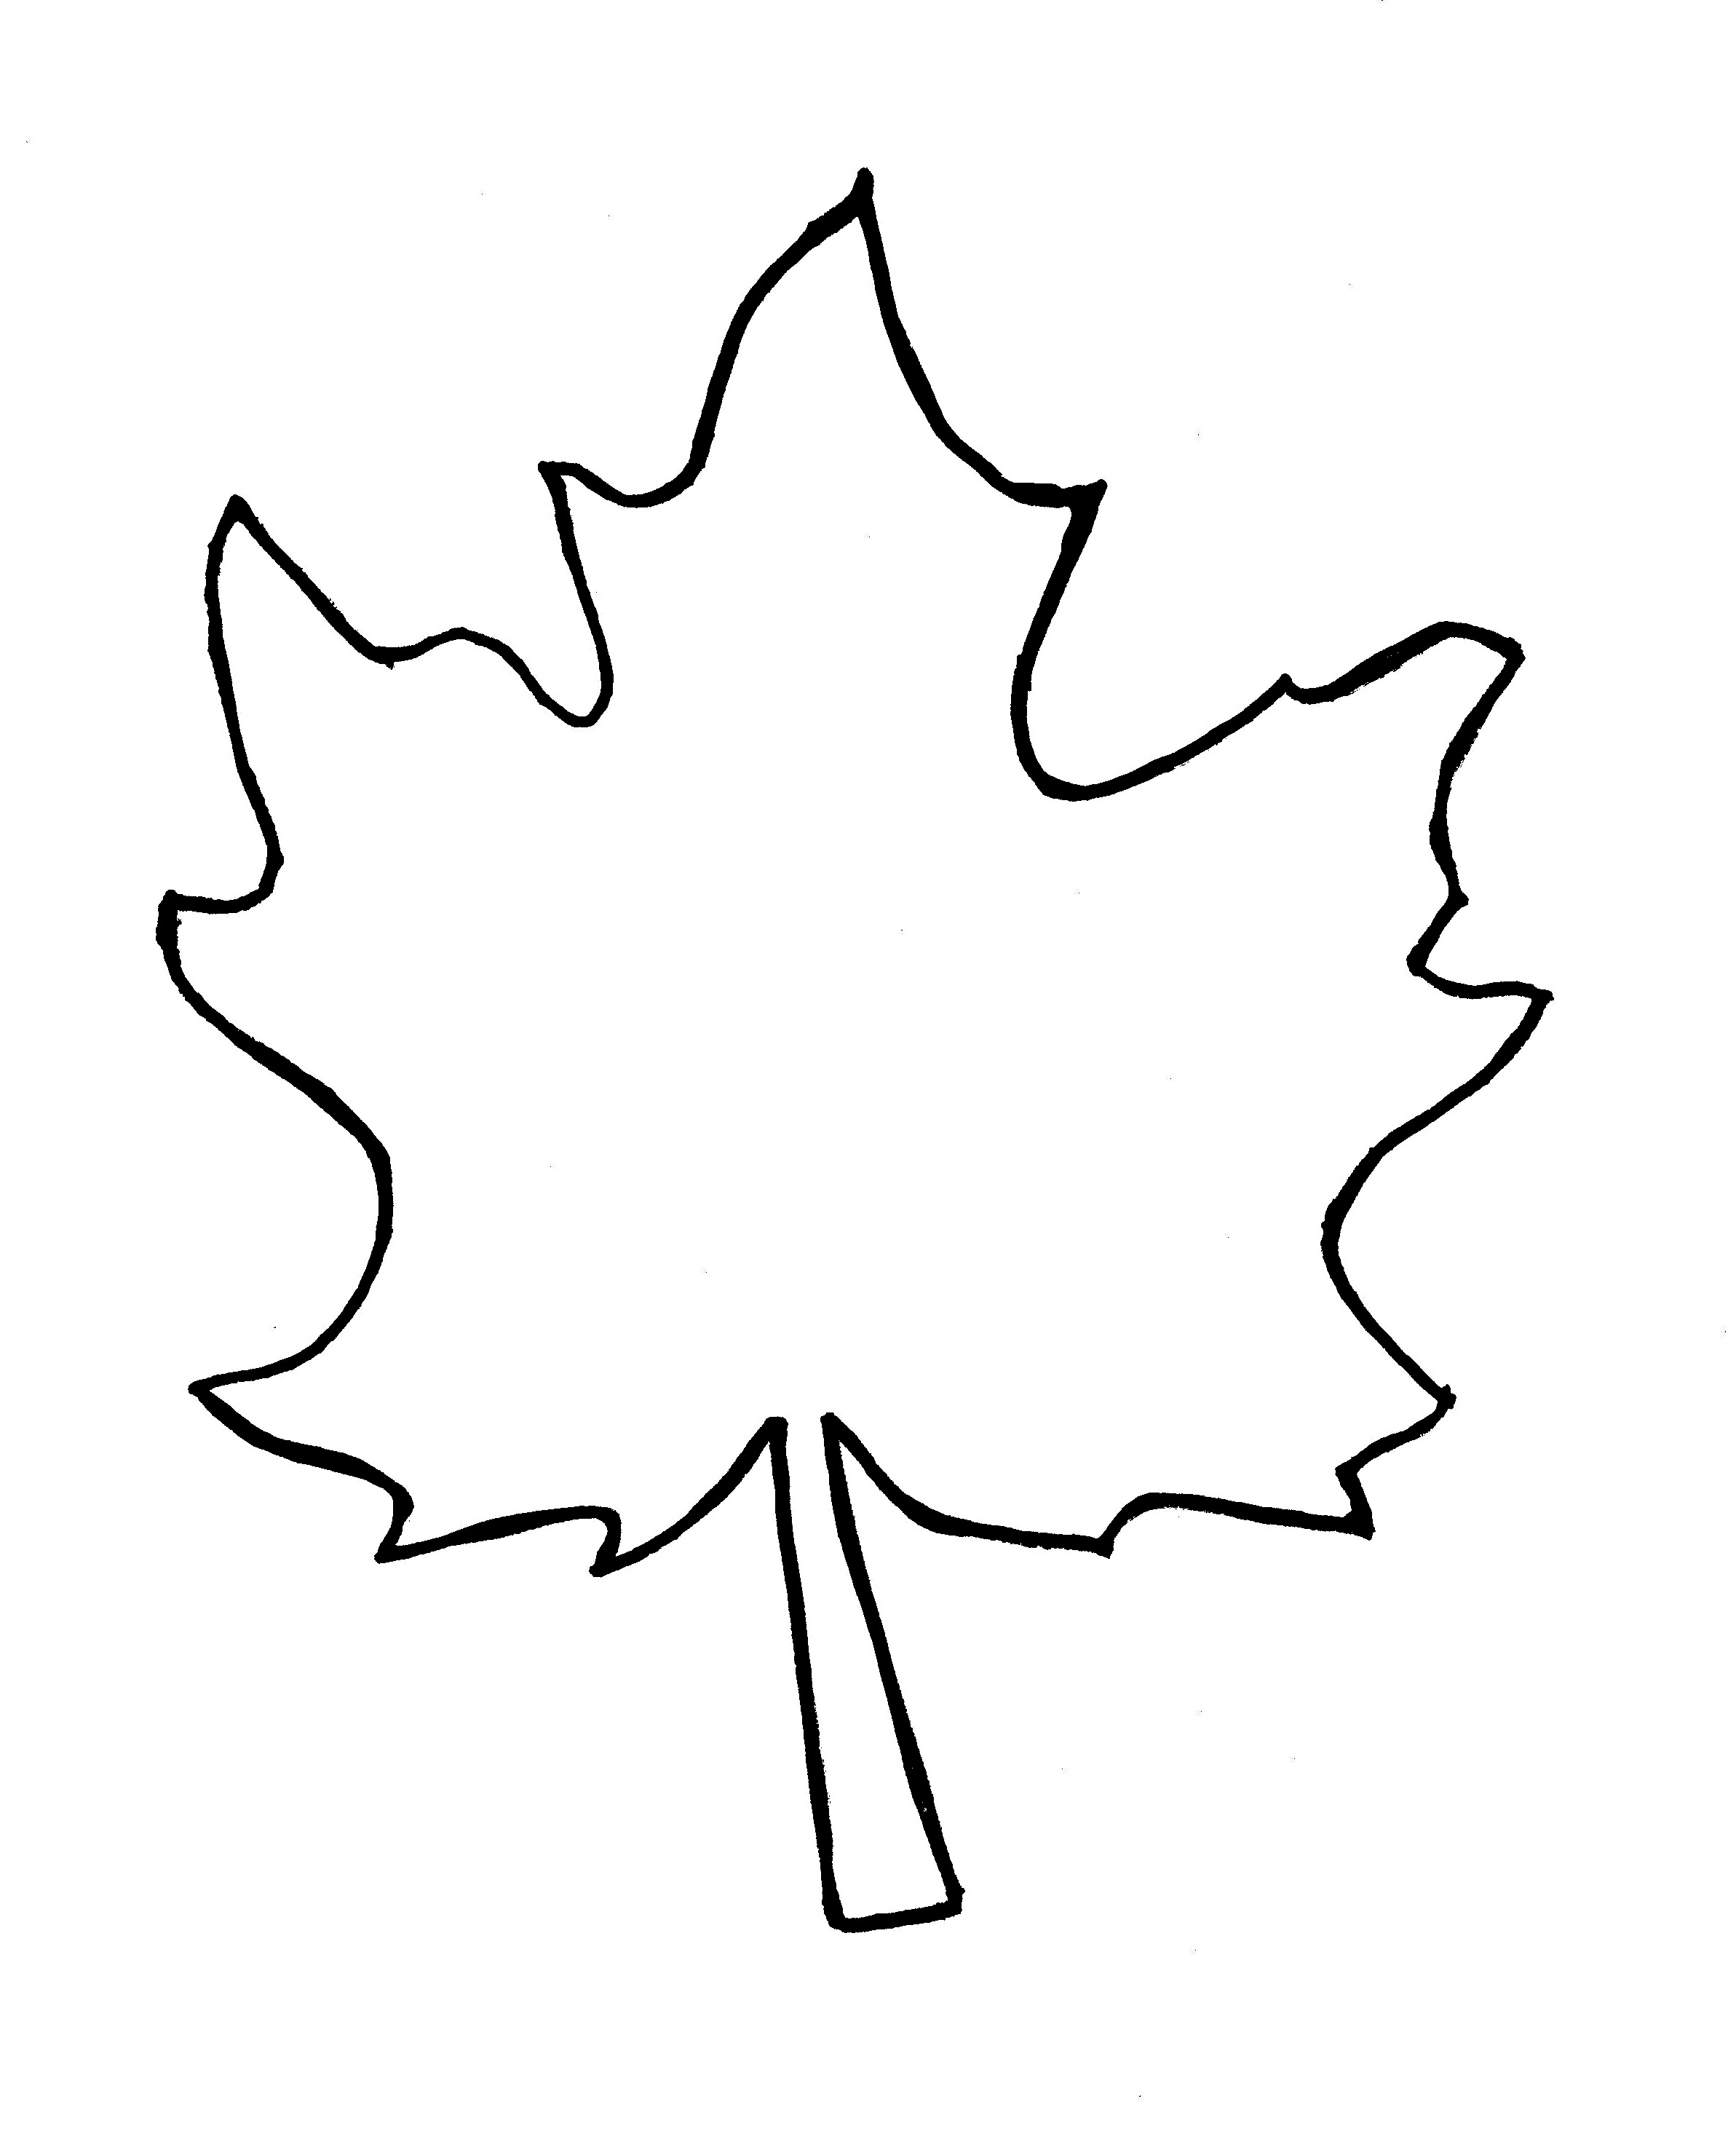 Leaf outline clip art